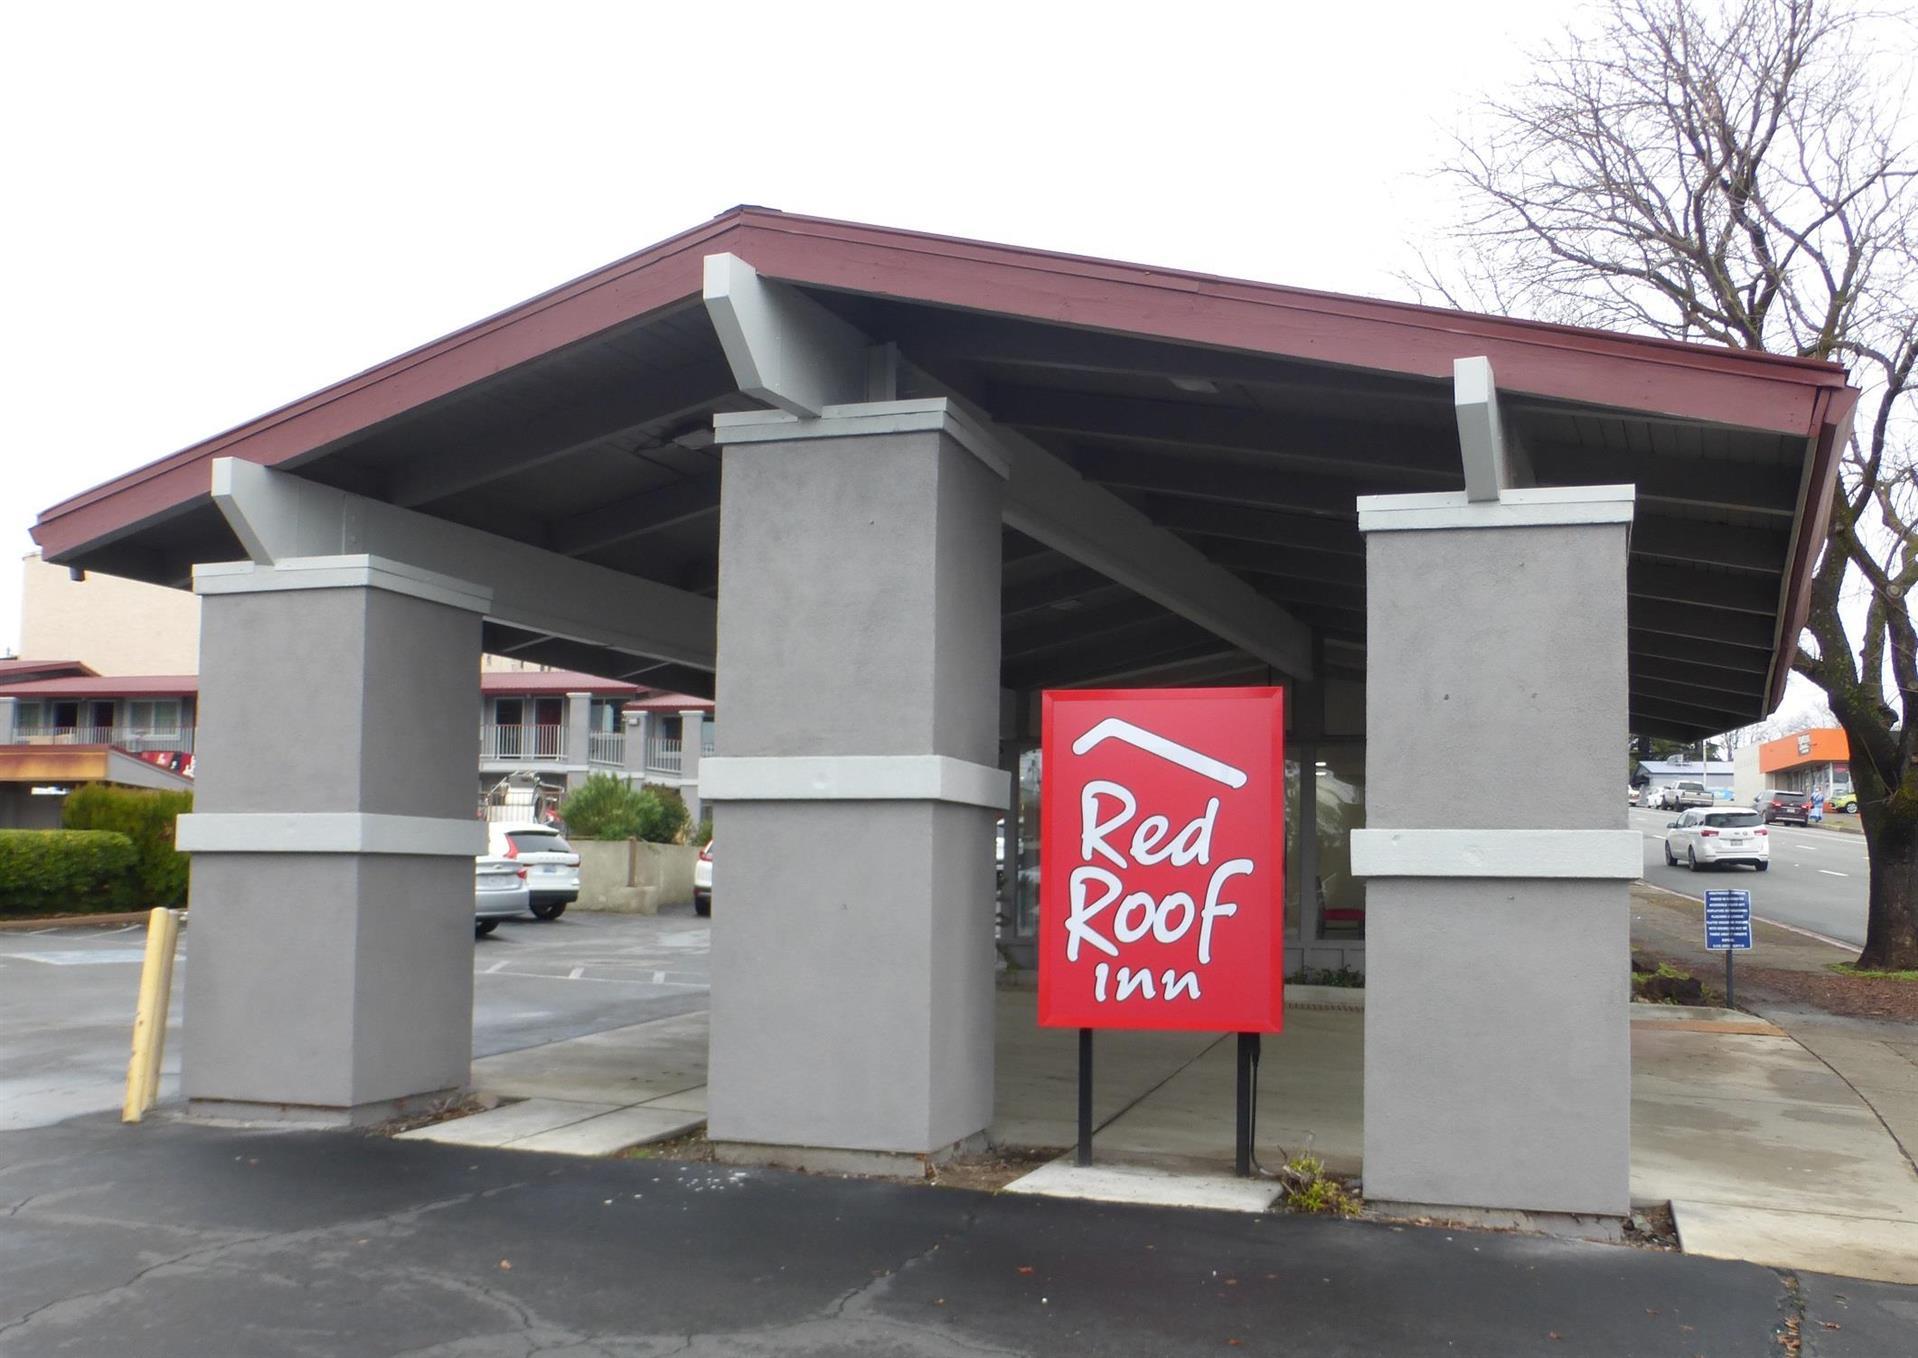 Red Roof Inn Redding in Redding, CA